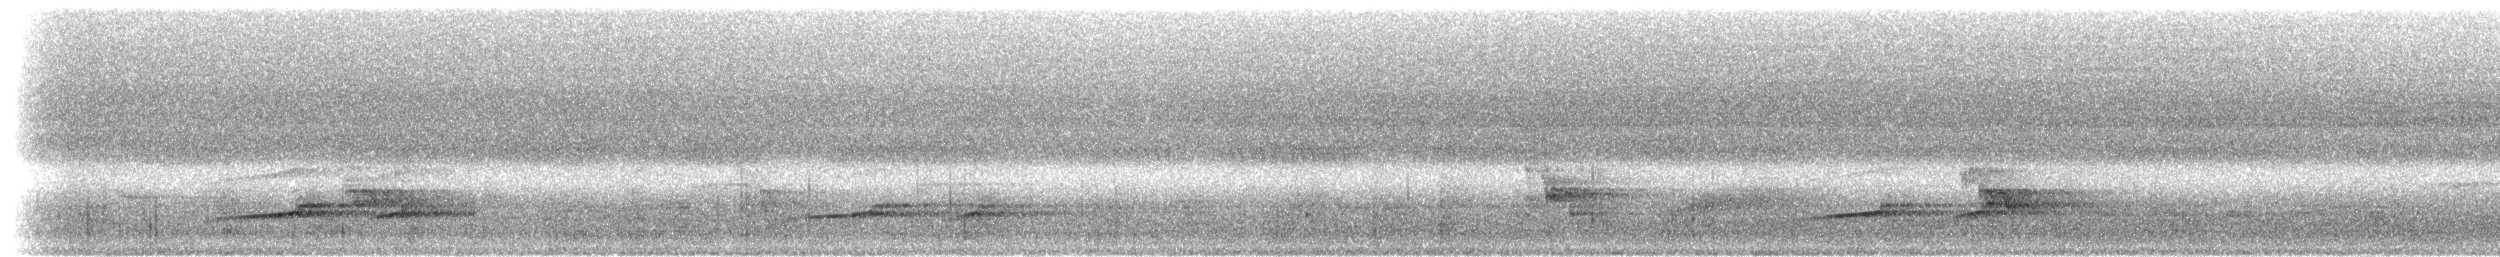 Орел-чубань індійський [група limnaeetus] - ML283538